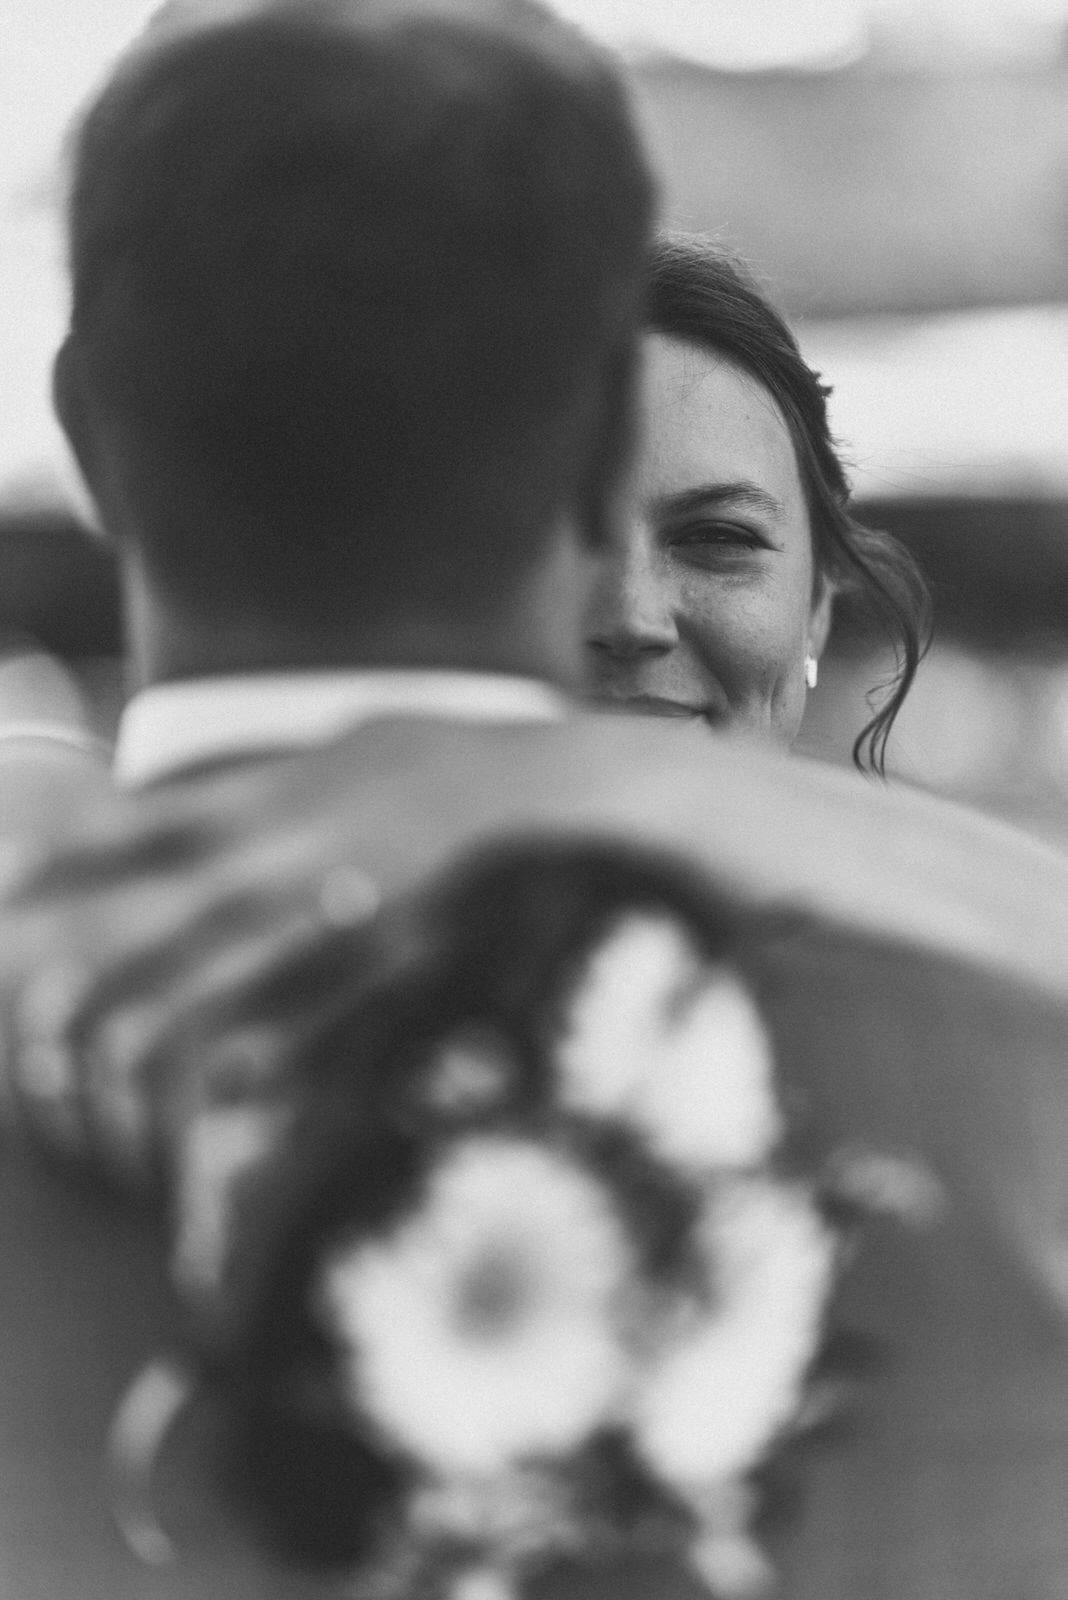 Hochzeitsfotograf: Glück sieht man auf anhieb - Eikaetschja Hochzeitsfotograf & Videograf